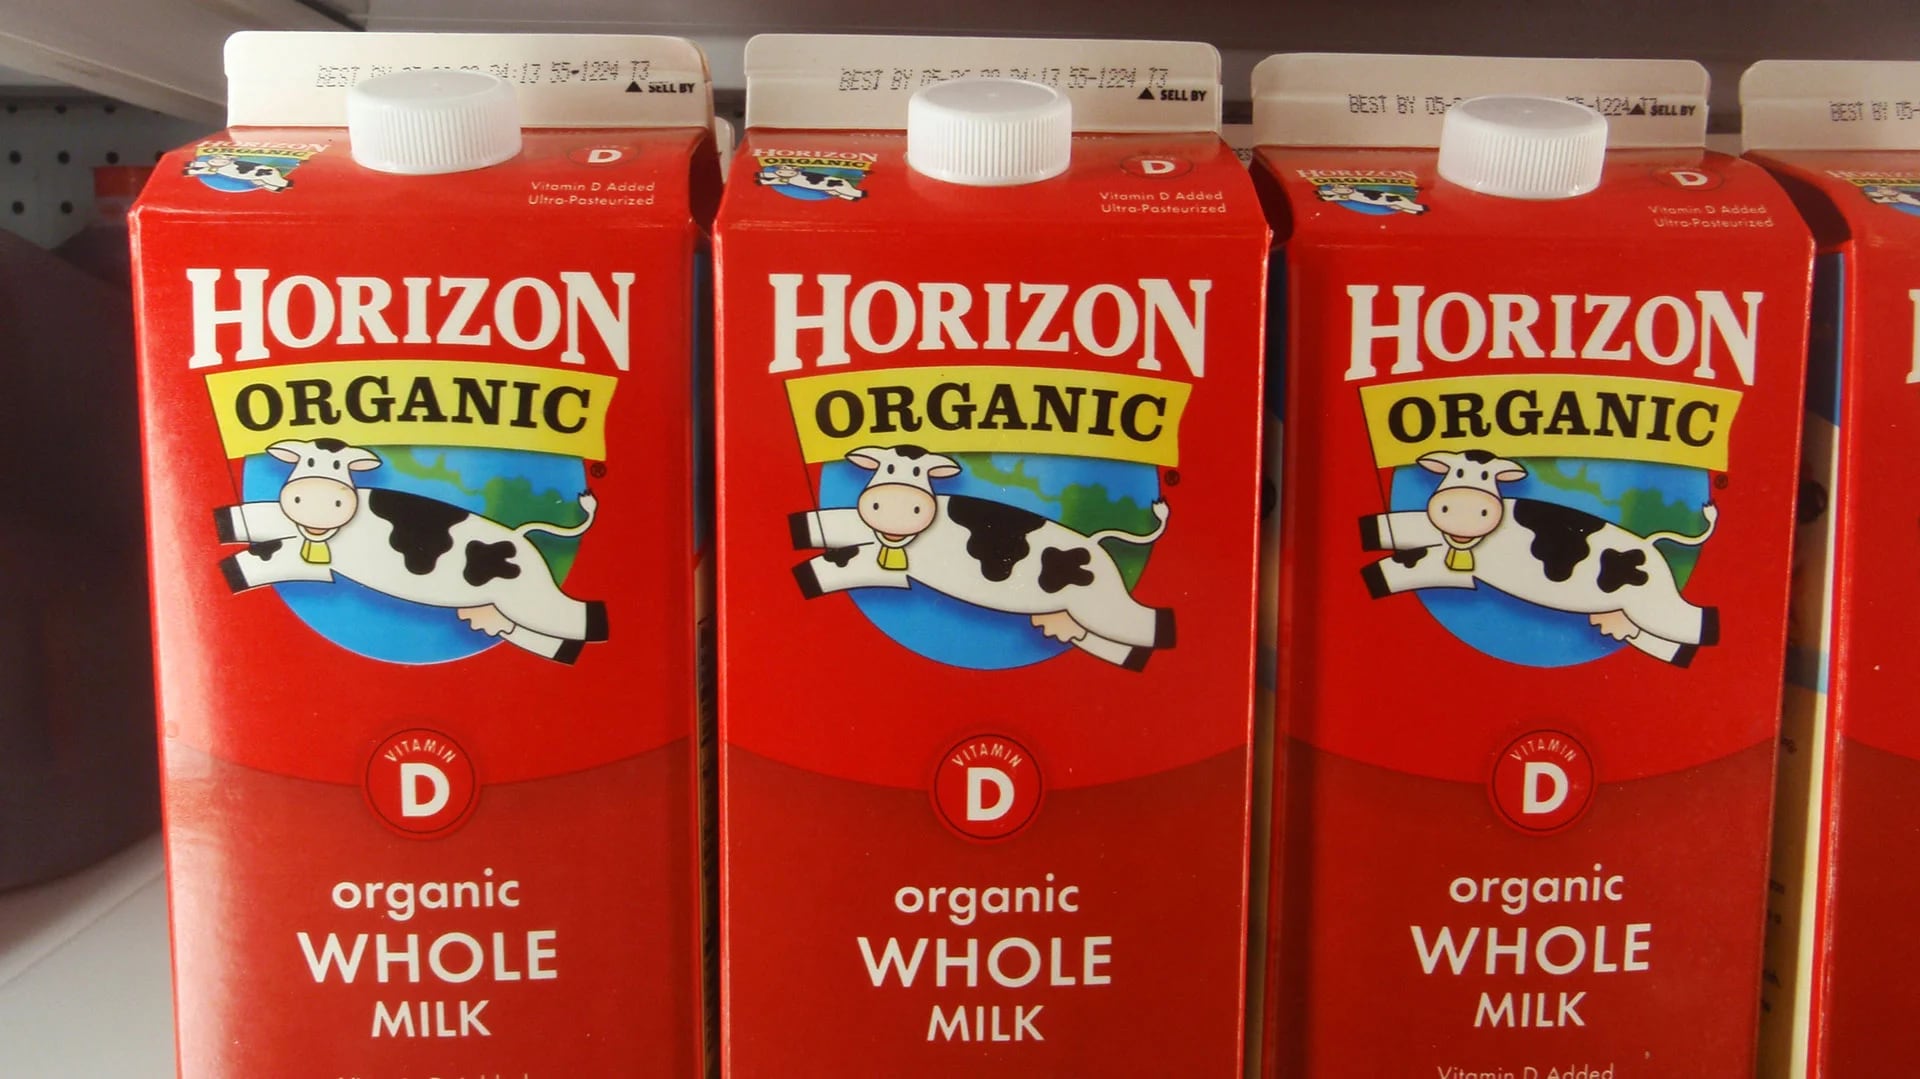 La leche de Horizon Organic es uno de los tantos productos adquiridos por el gigante francés Danone